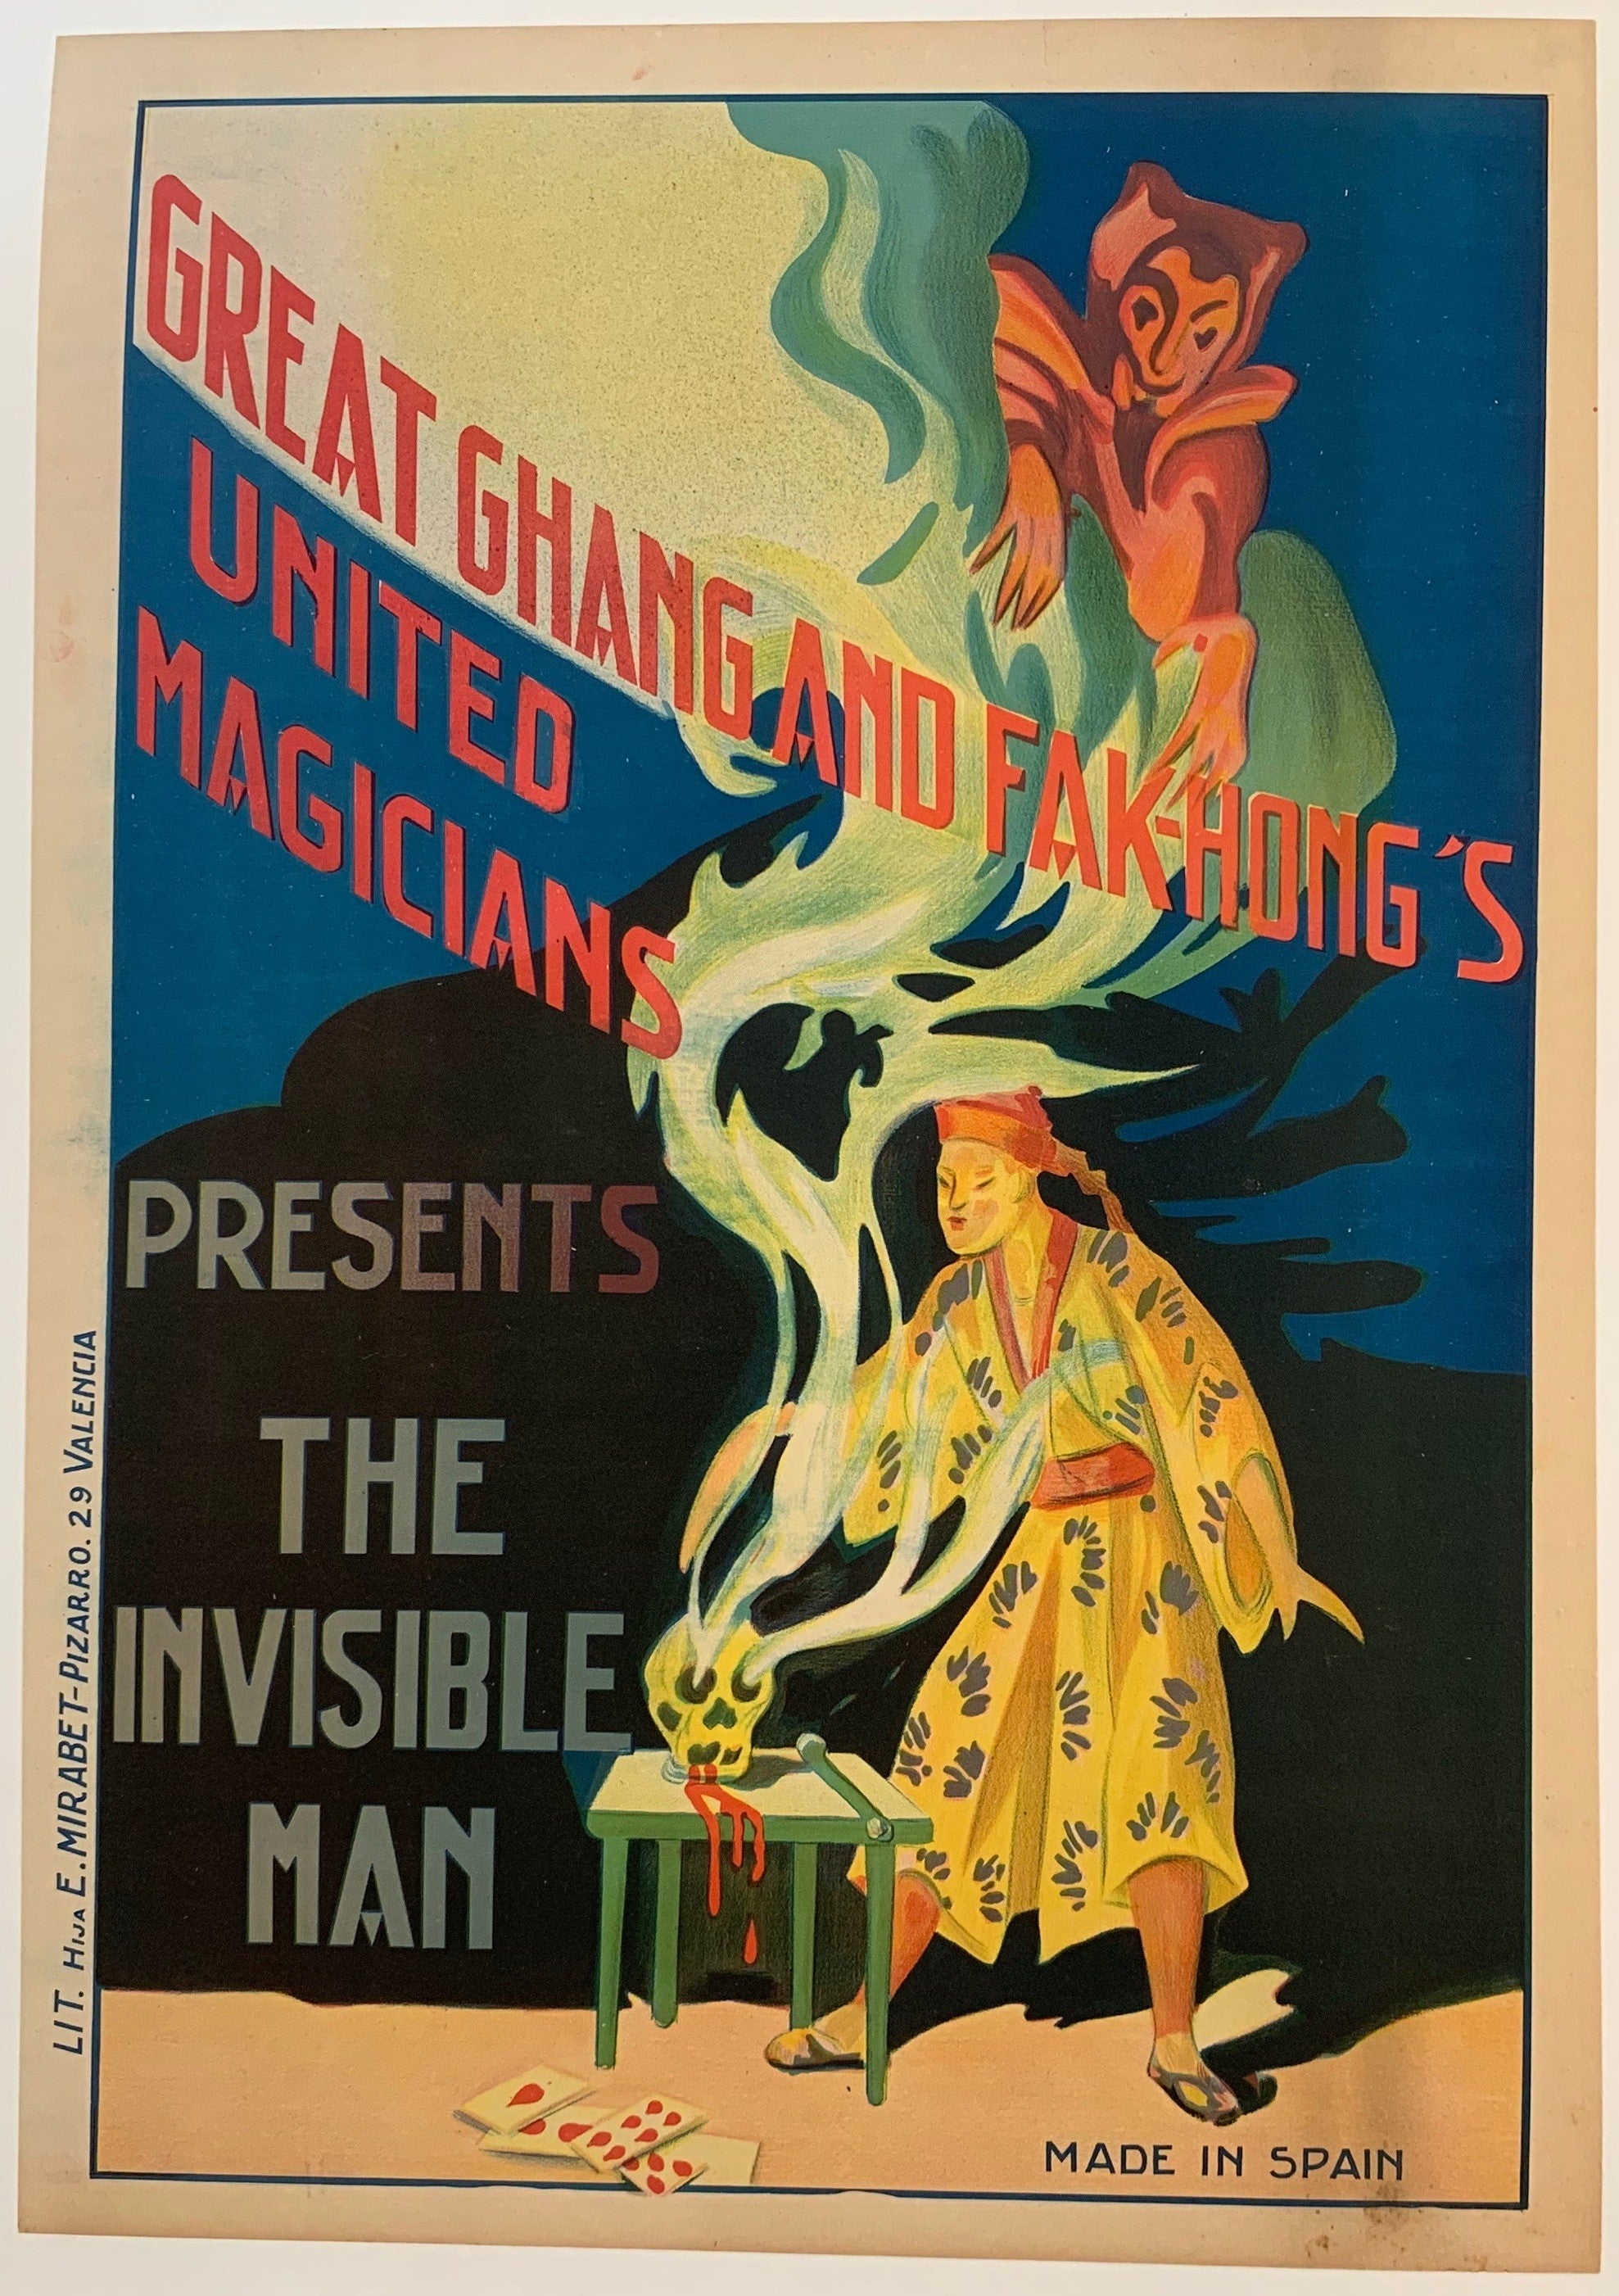 Chang and Fak-Hong's United Magicians Presents: The Invisible Man